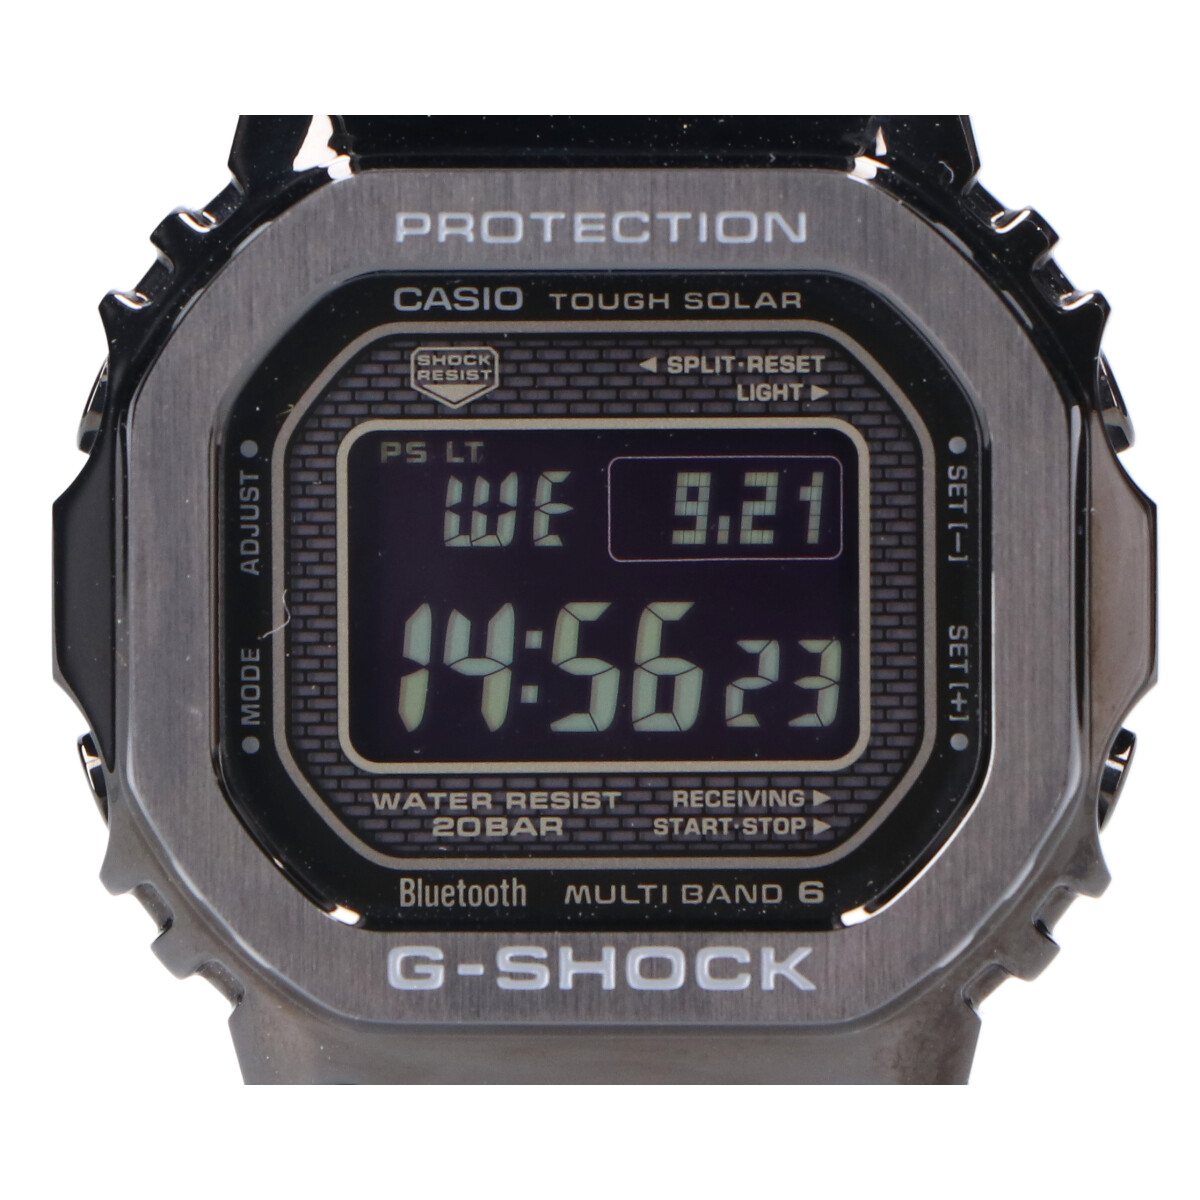 G-SHOCKのGMW-B5000GD-1JF フルメタル Bluetooth MULTIBAND6 タフソーラー電波 デジタル 腕時計 ブラックの買取実績です。